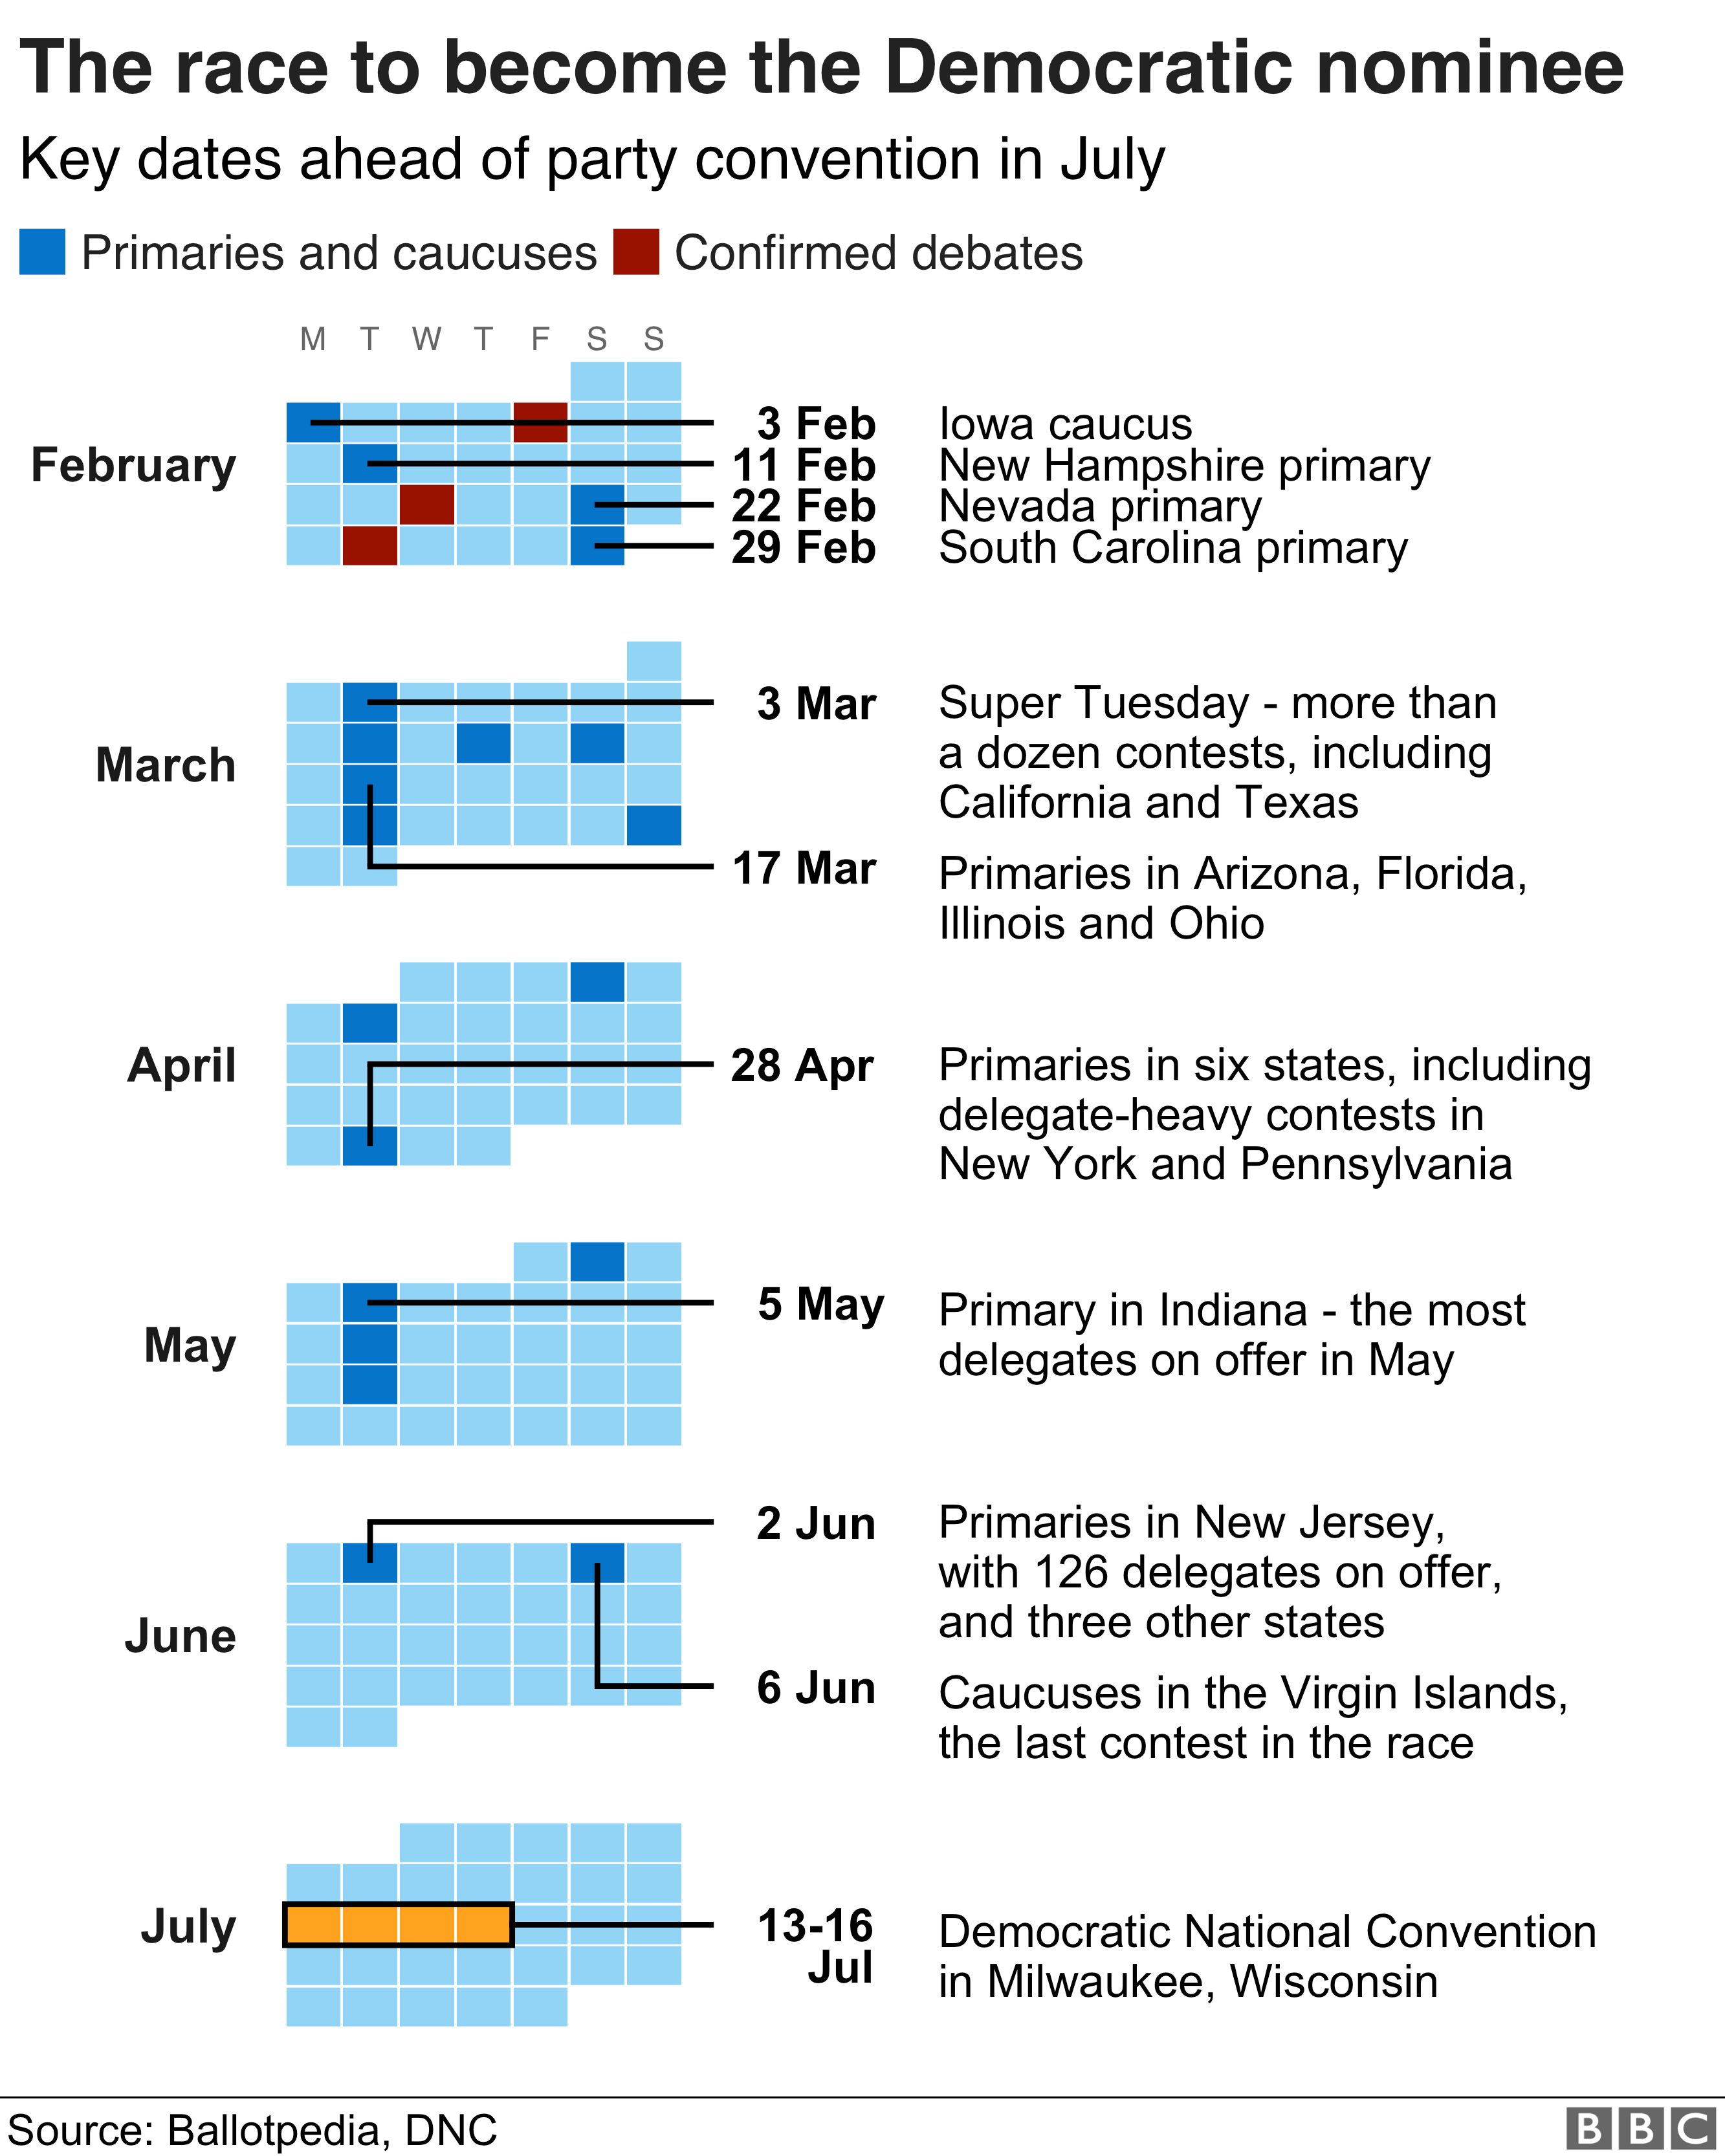 График календаря, показывающий некоторые ключевые даты подготовки к Демократическому национальному съезду в июле